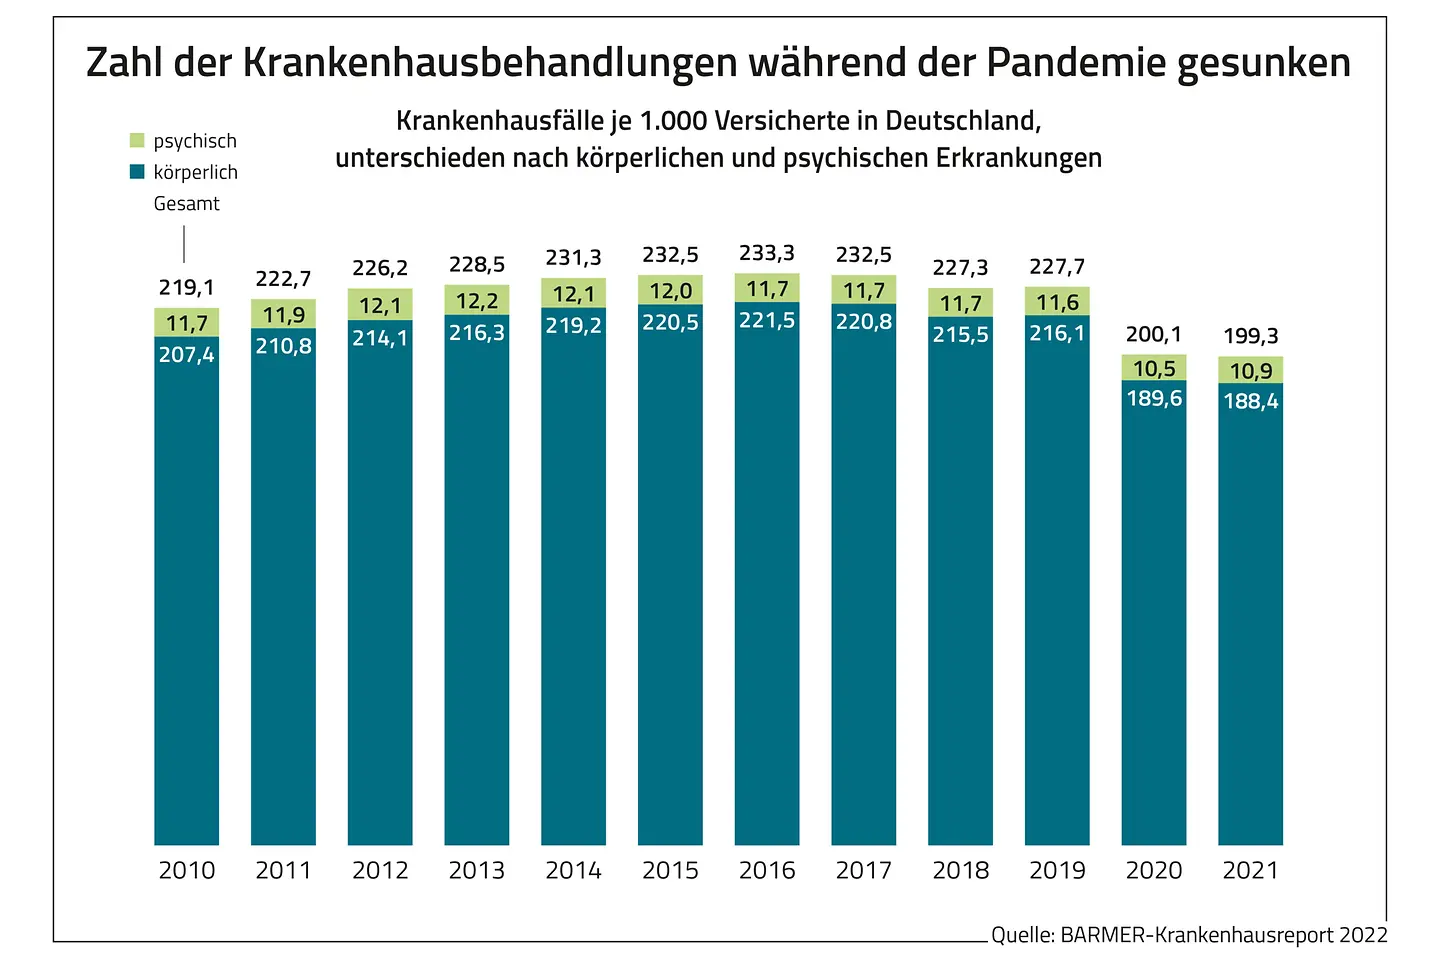 Krankenhausfälle je 1.000 Versicherte in Deutschland